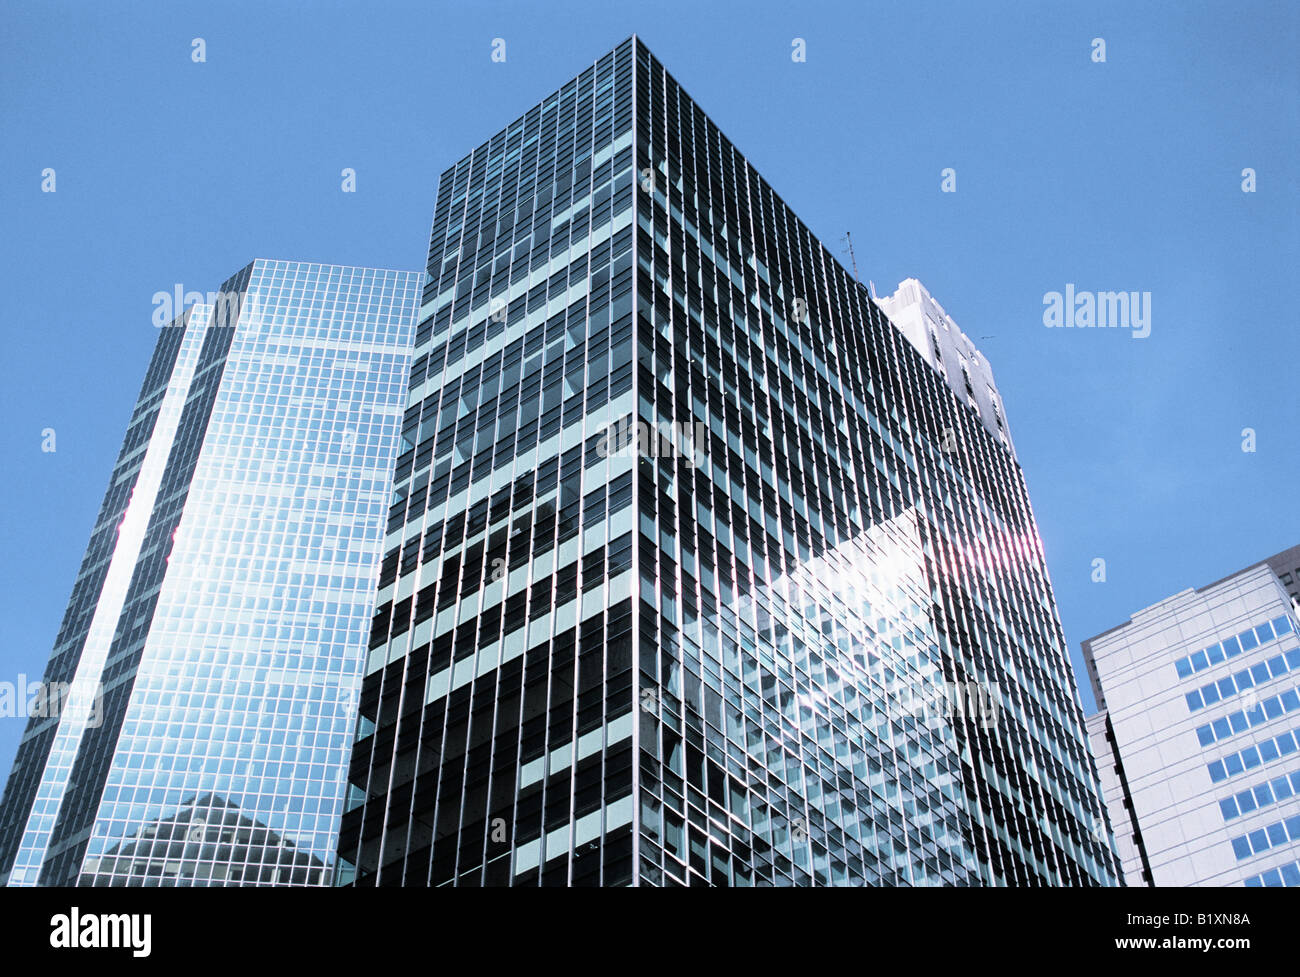 Lever House New York City 390 Park Avenue et 53e rue.façade de gratte-ciel de caisse de verre achevé en 1952 dans le style international. Banque D'Images